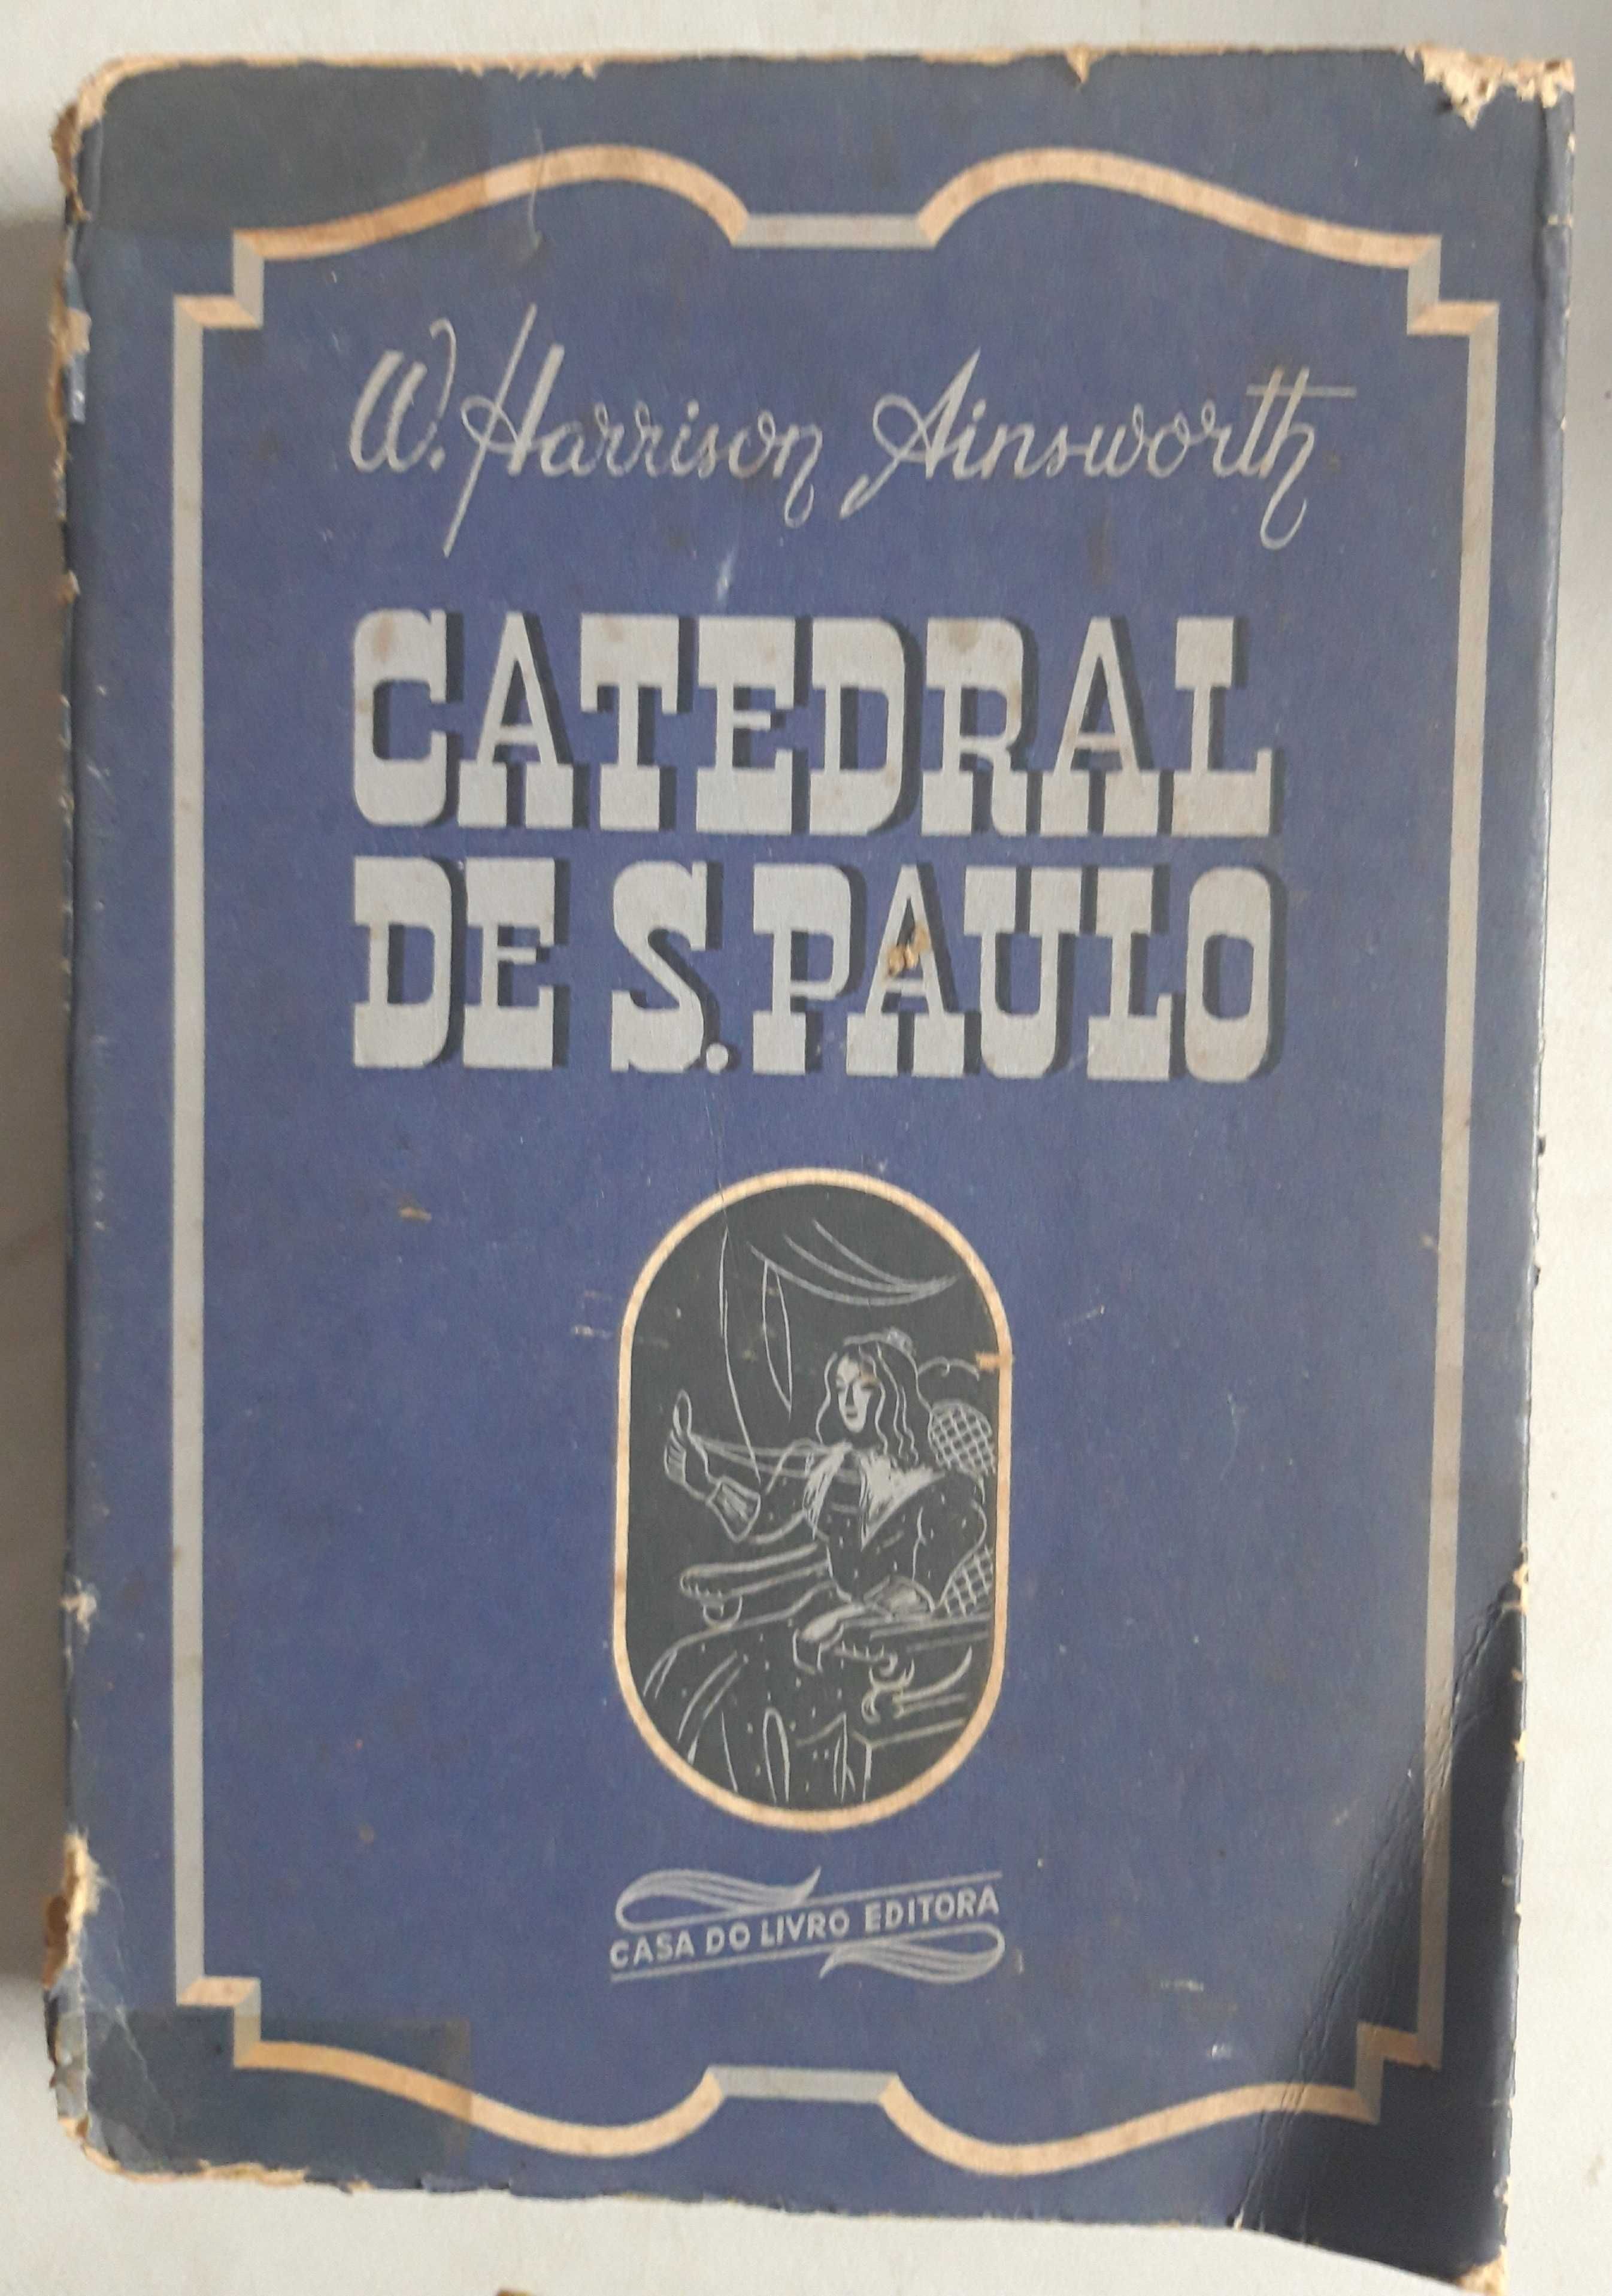 Livro  Ref Cx B- W. H. Ainsworth - A Catedral de S. Paulo